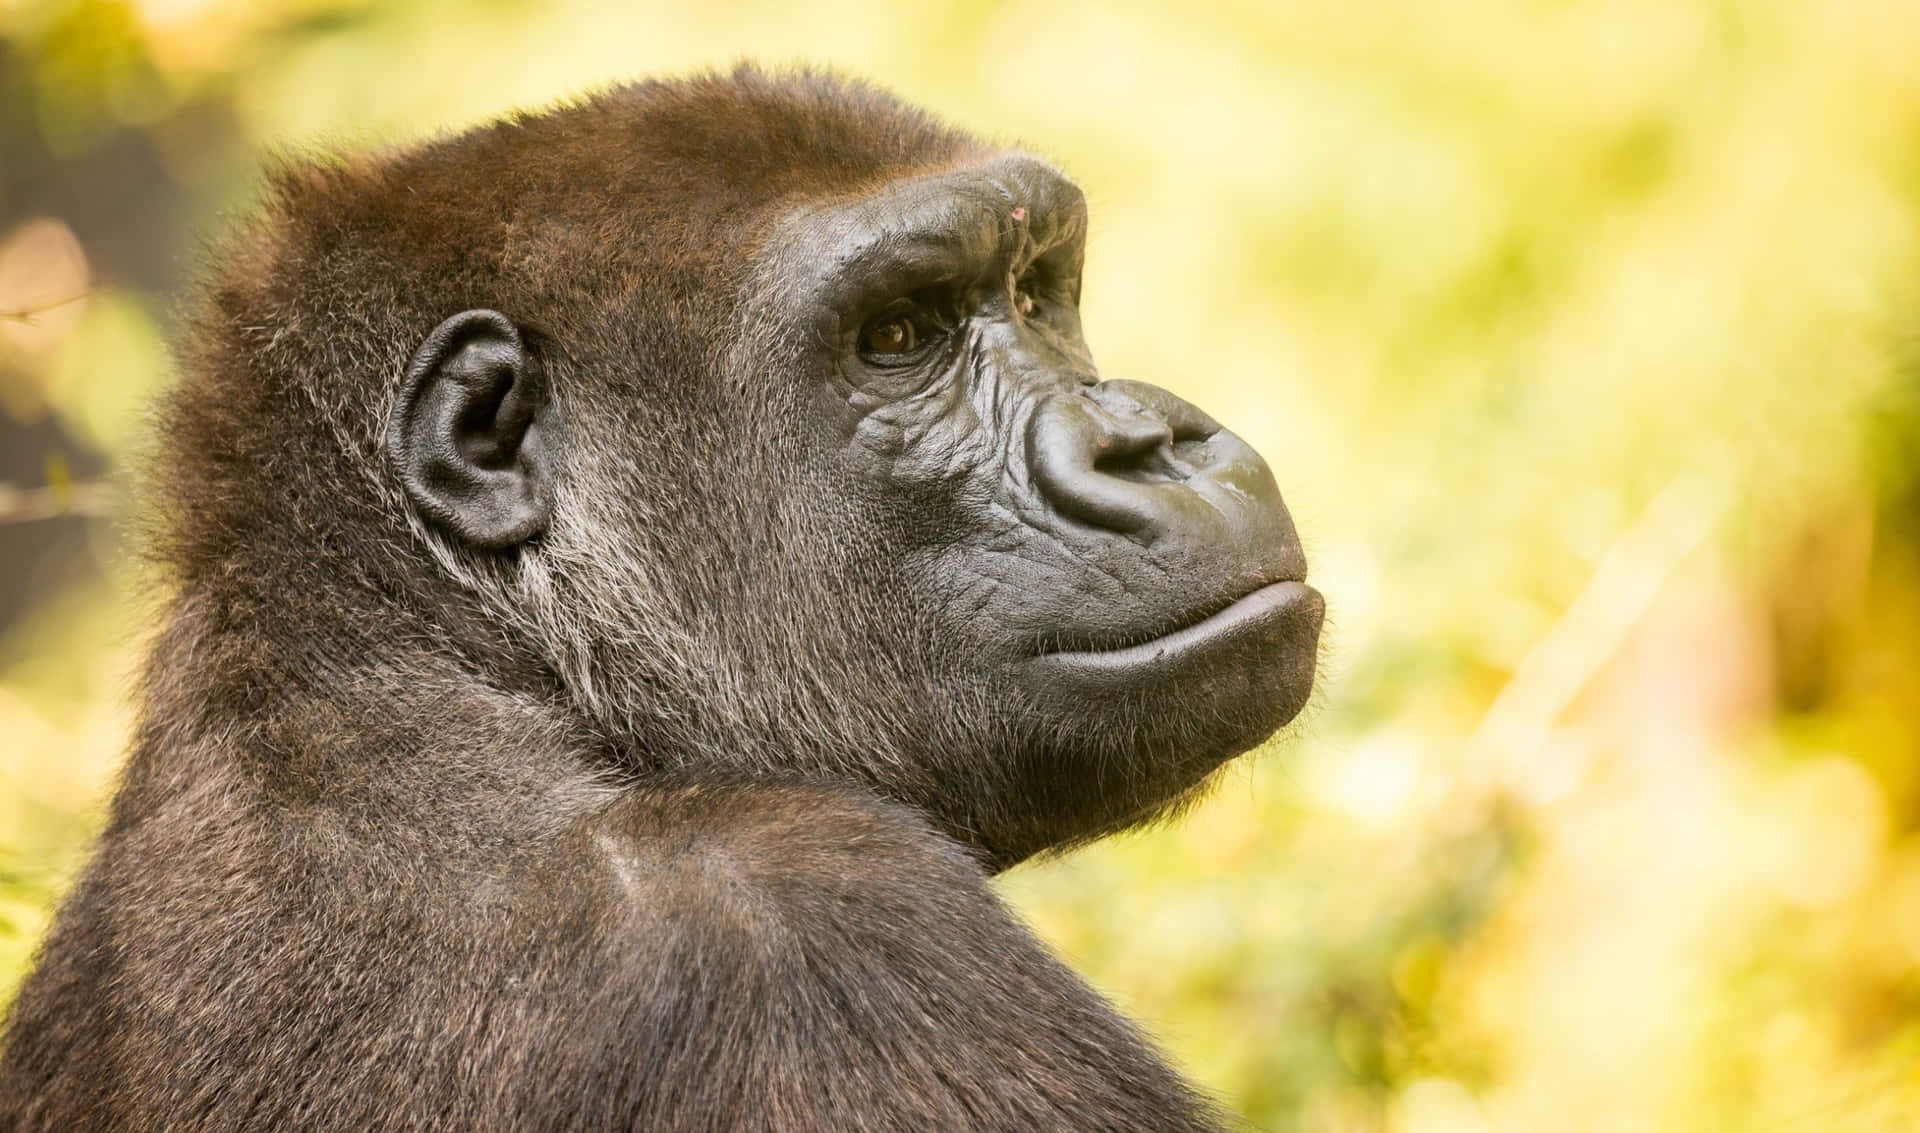 A closeup shot of a majestic Gorilla in soft lighting